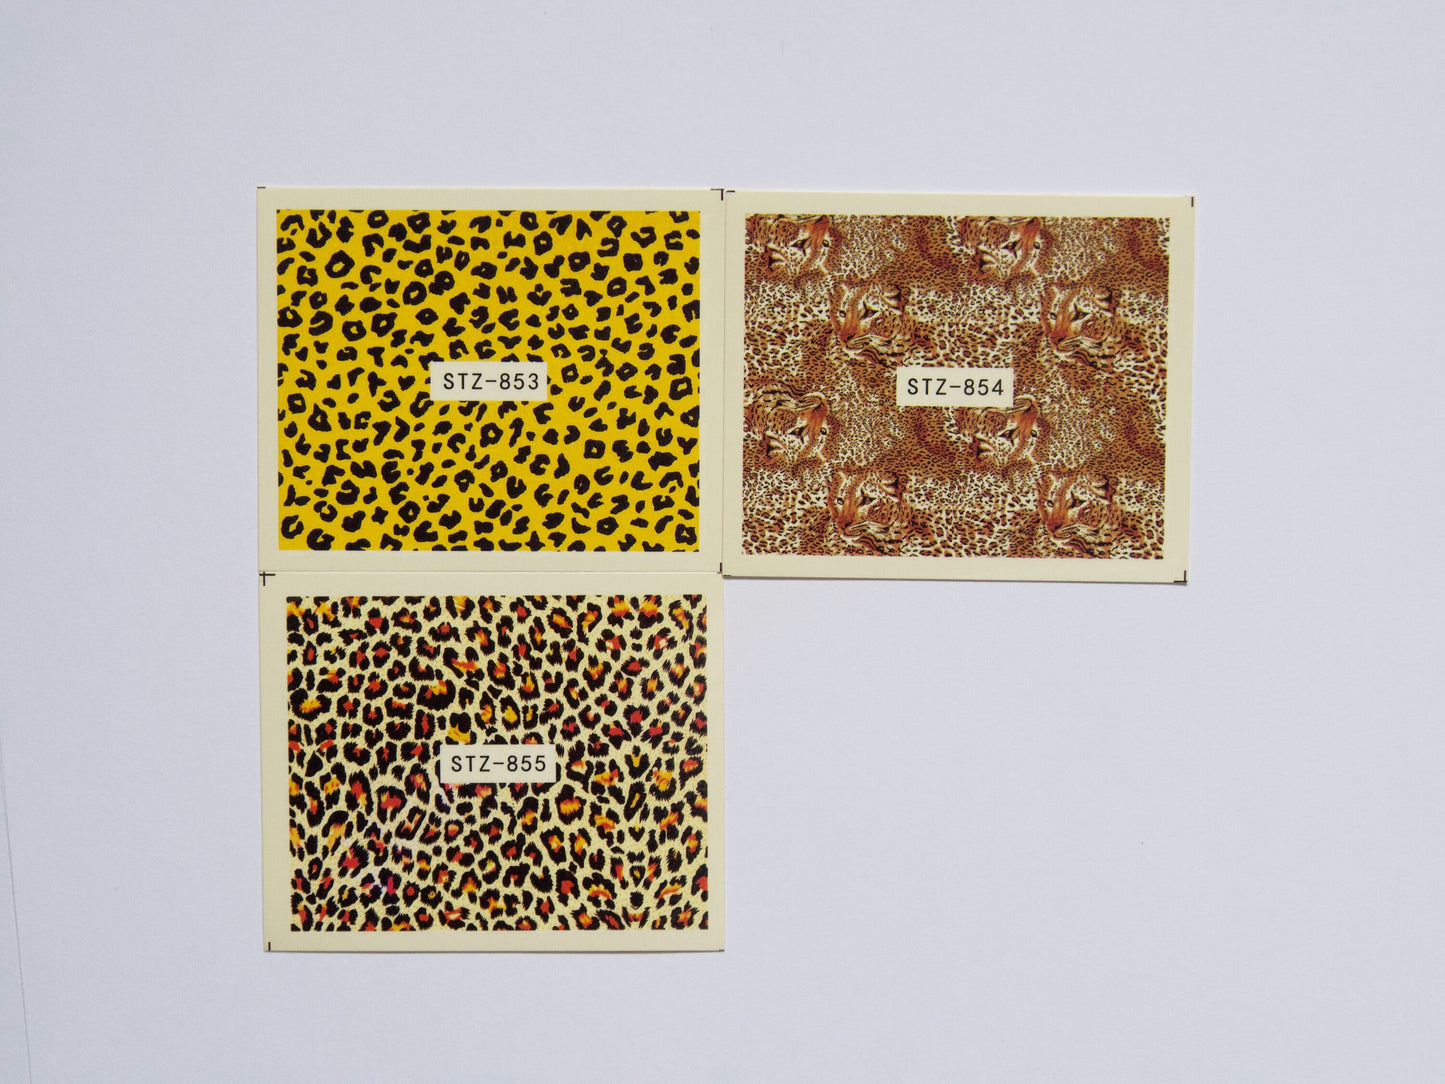 11pcs Leopard Print Nail Tattoo/ Animal Print Water transfer Nails Sticker/ Leopard Cheetah Nail Art Decal Sticker